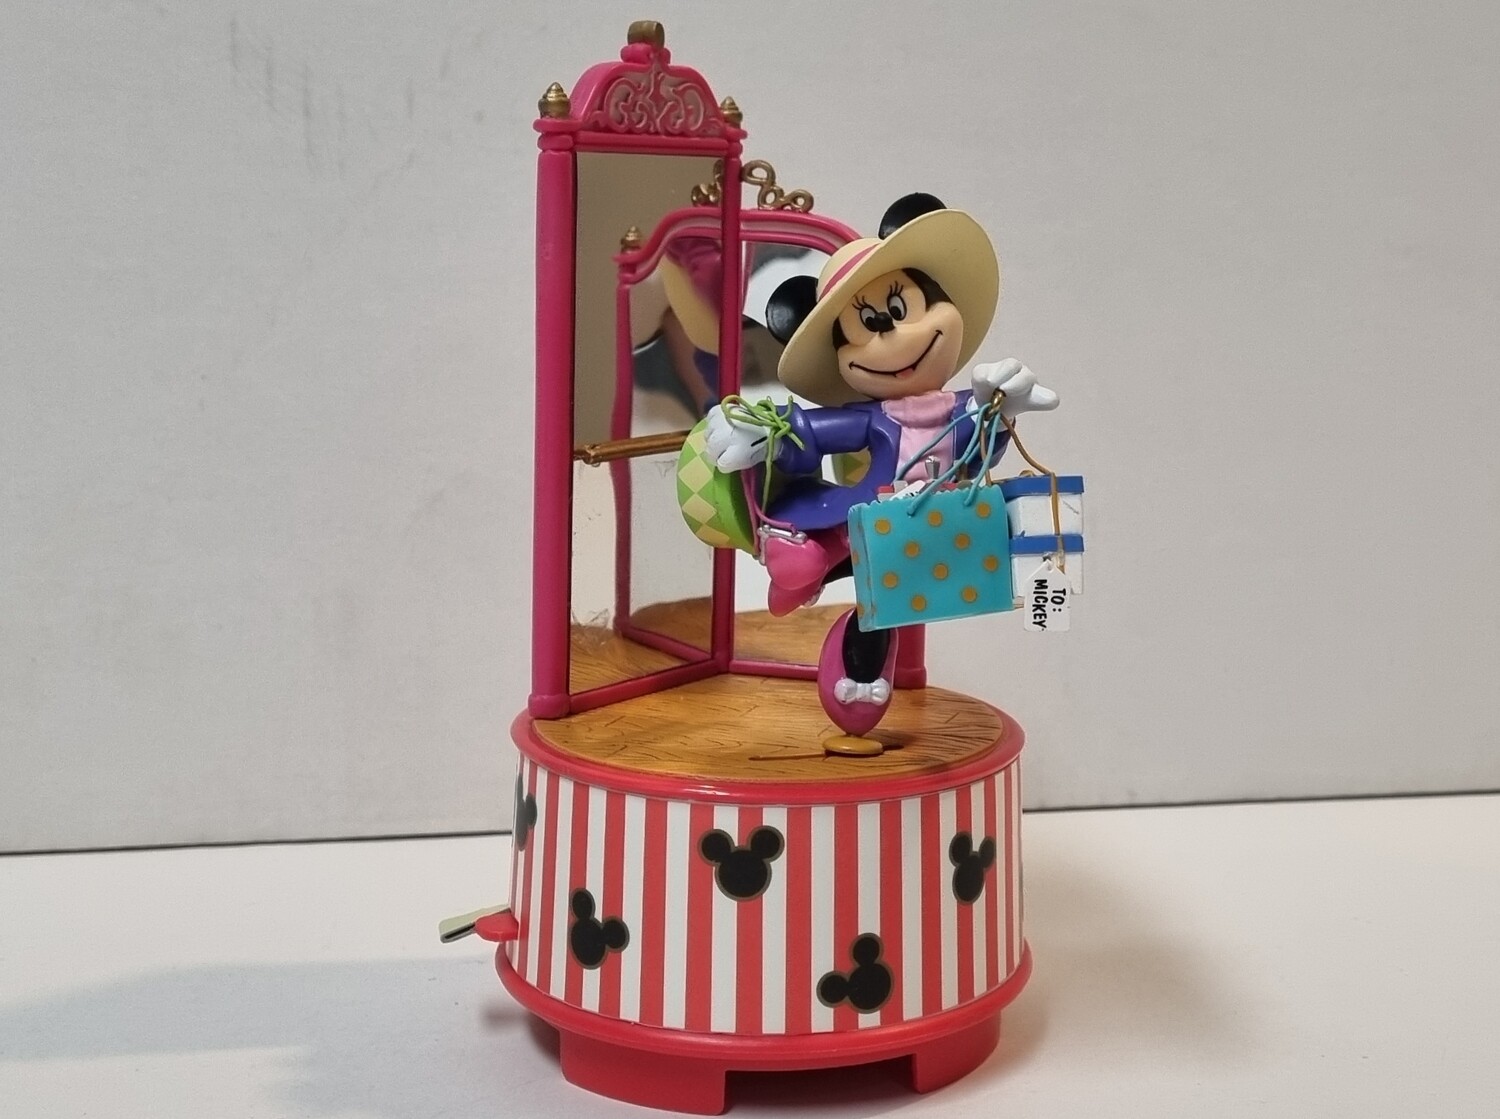 Speeldoosje, "Shop 'Til We Drop", Minnie Mouse, Disney